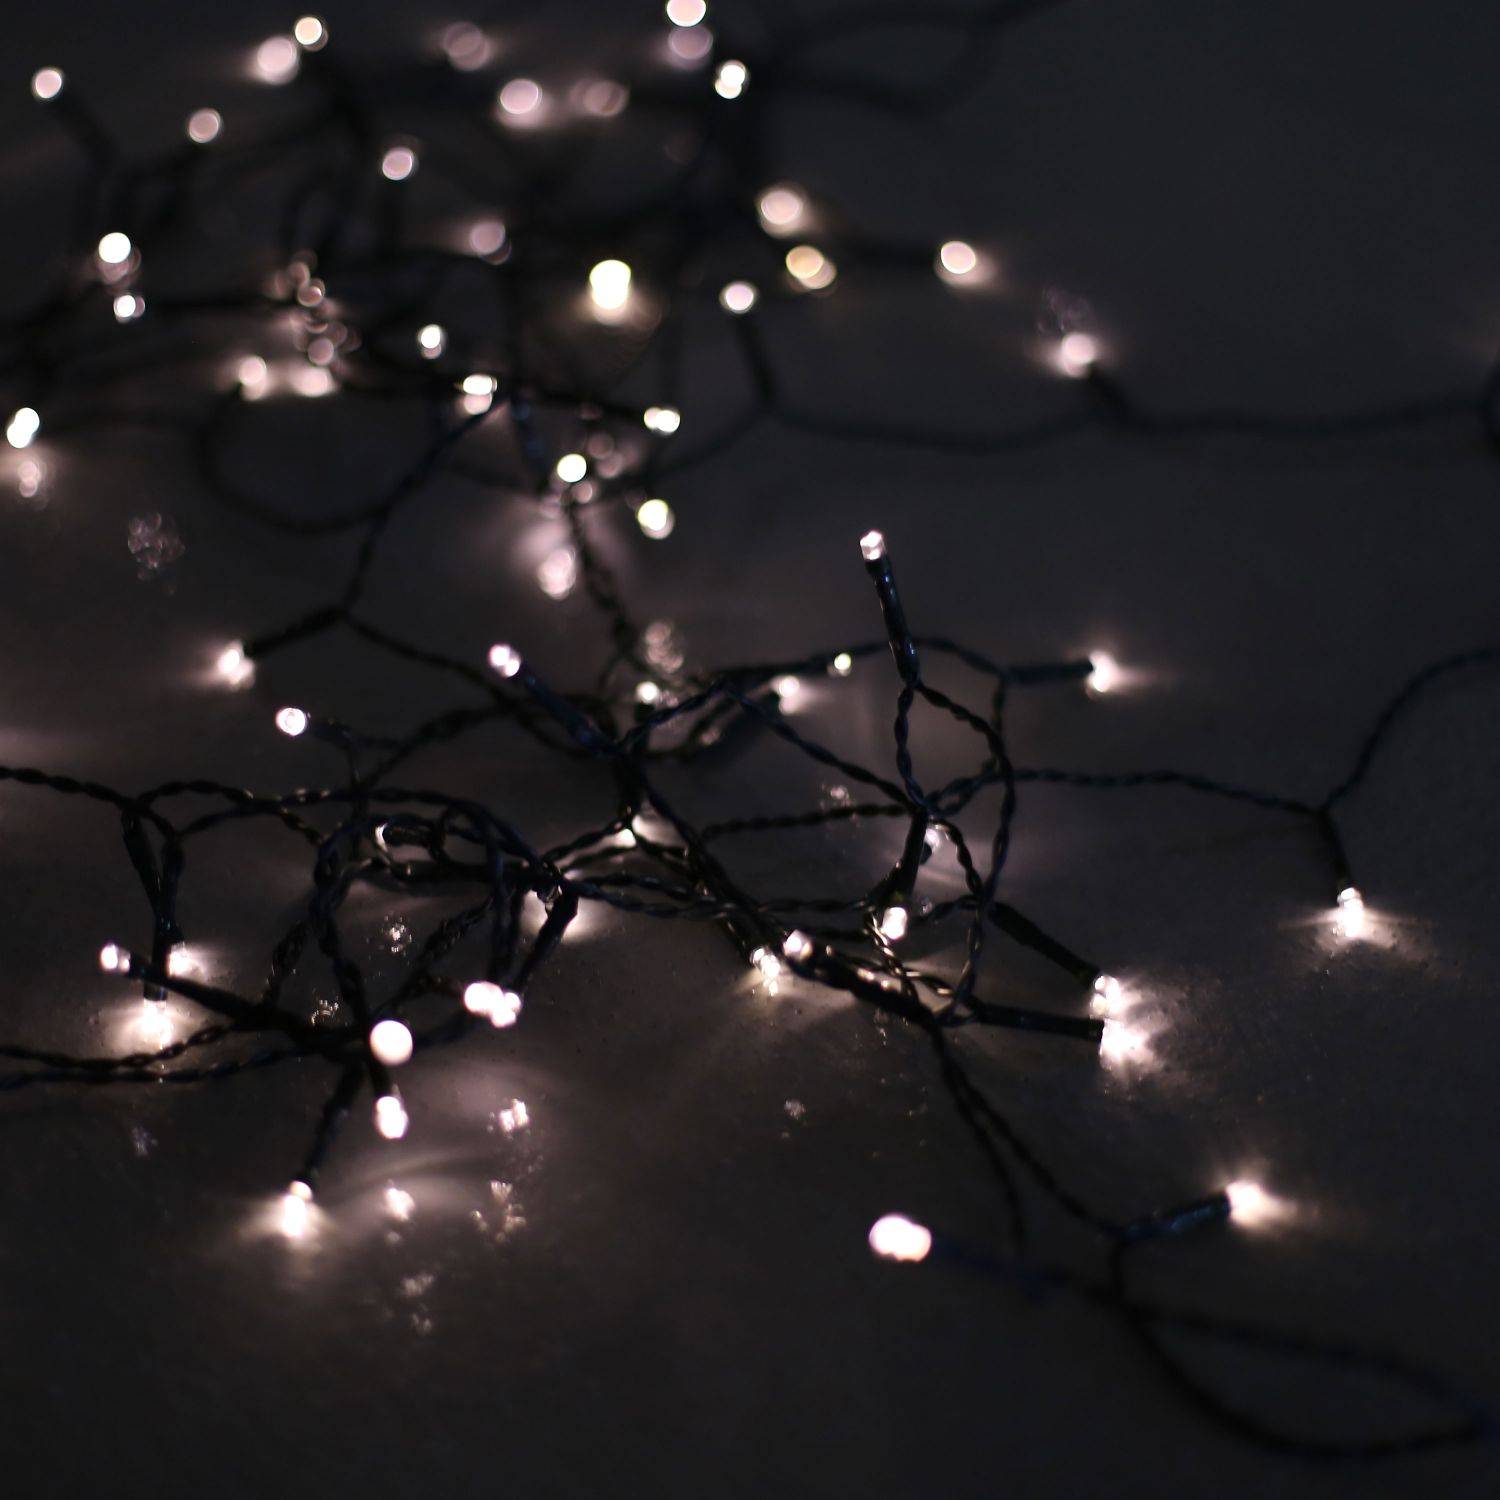 Guirlande lumineuse extérieure de Noël avec fonction timer, 10m de long, 100 LED blanc chaud, 8 modes Photo1